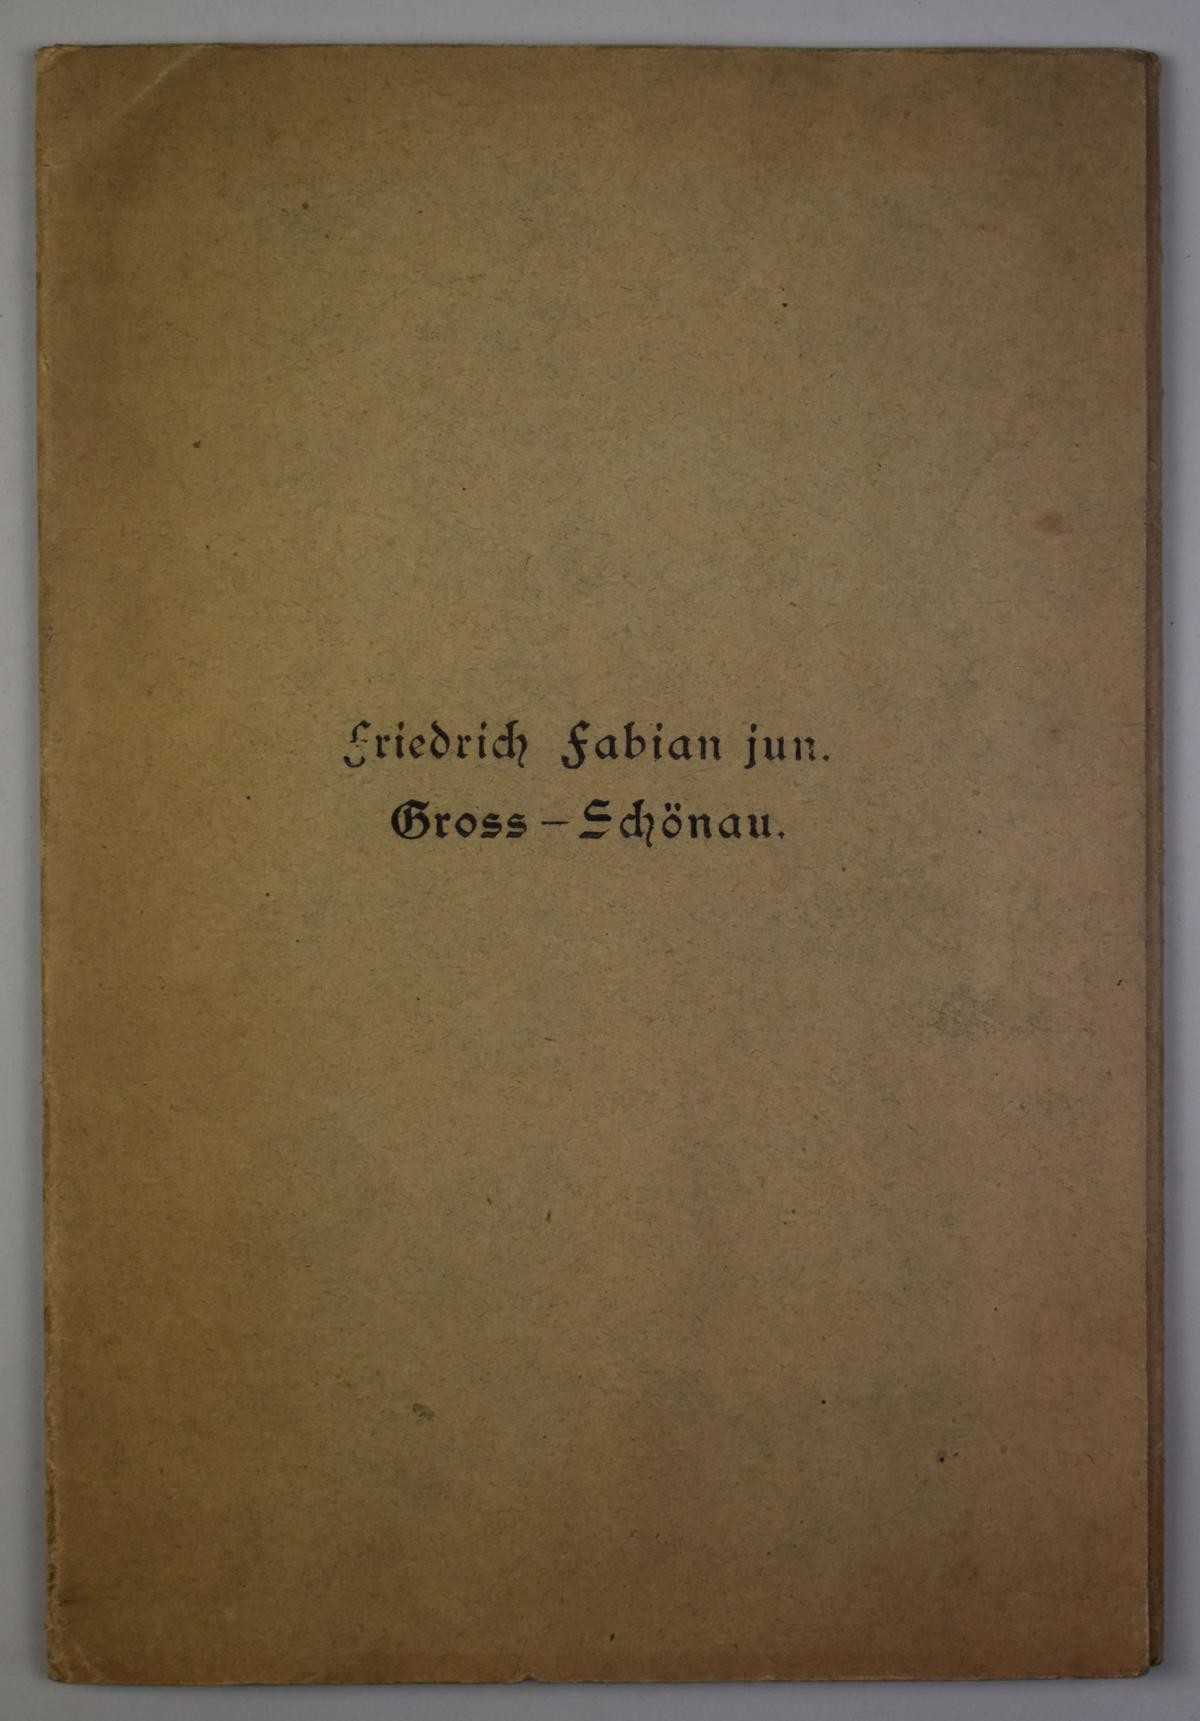 Musterbuch der Firma Friedrich Fabian jun. (Deutsches Damast- und Frottiermuseum CC BY-NC-SA)